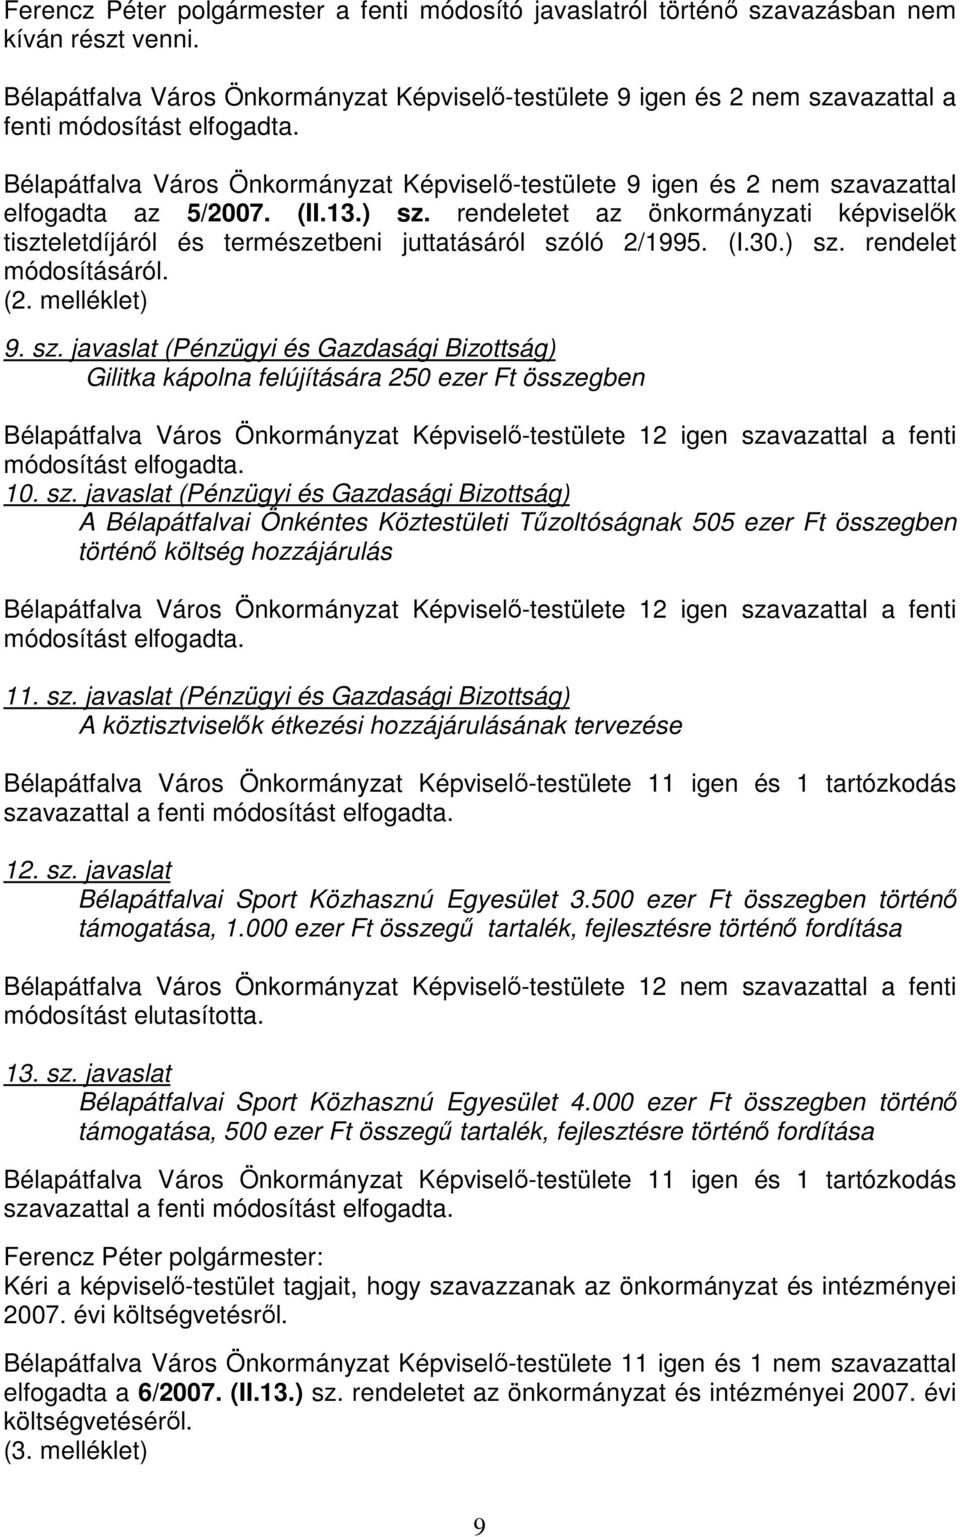 Bélapátfalva Város Önkormányzat Képviselő-testülete 9 igen és 2 nem szavazattal elfogadta az 5/2007. (II.13.) sz.